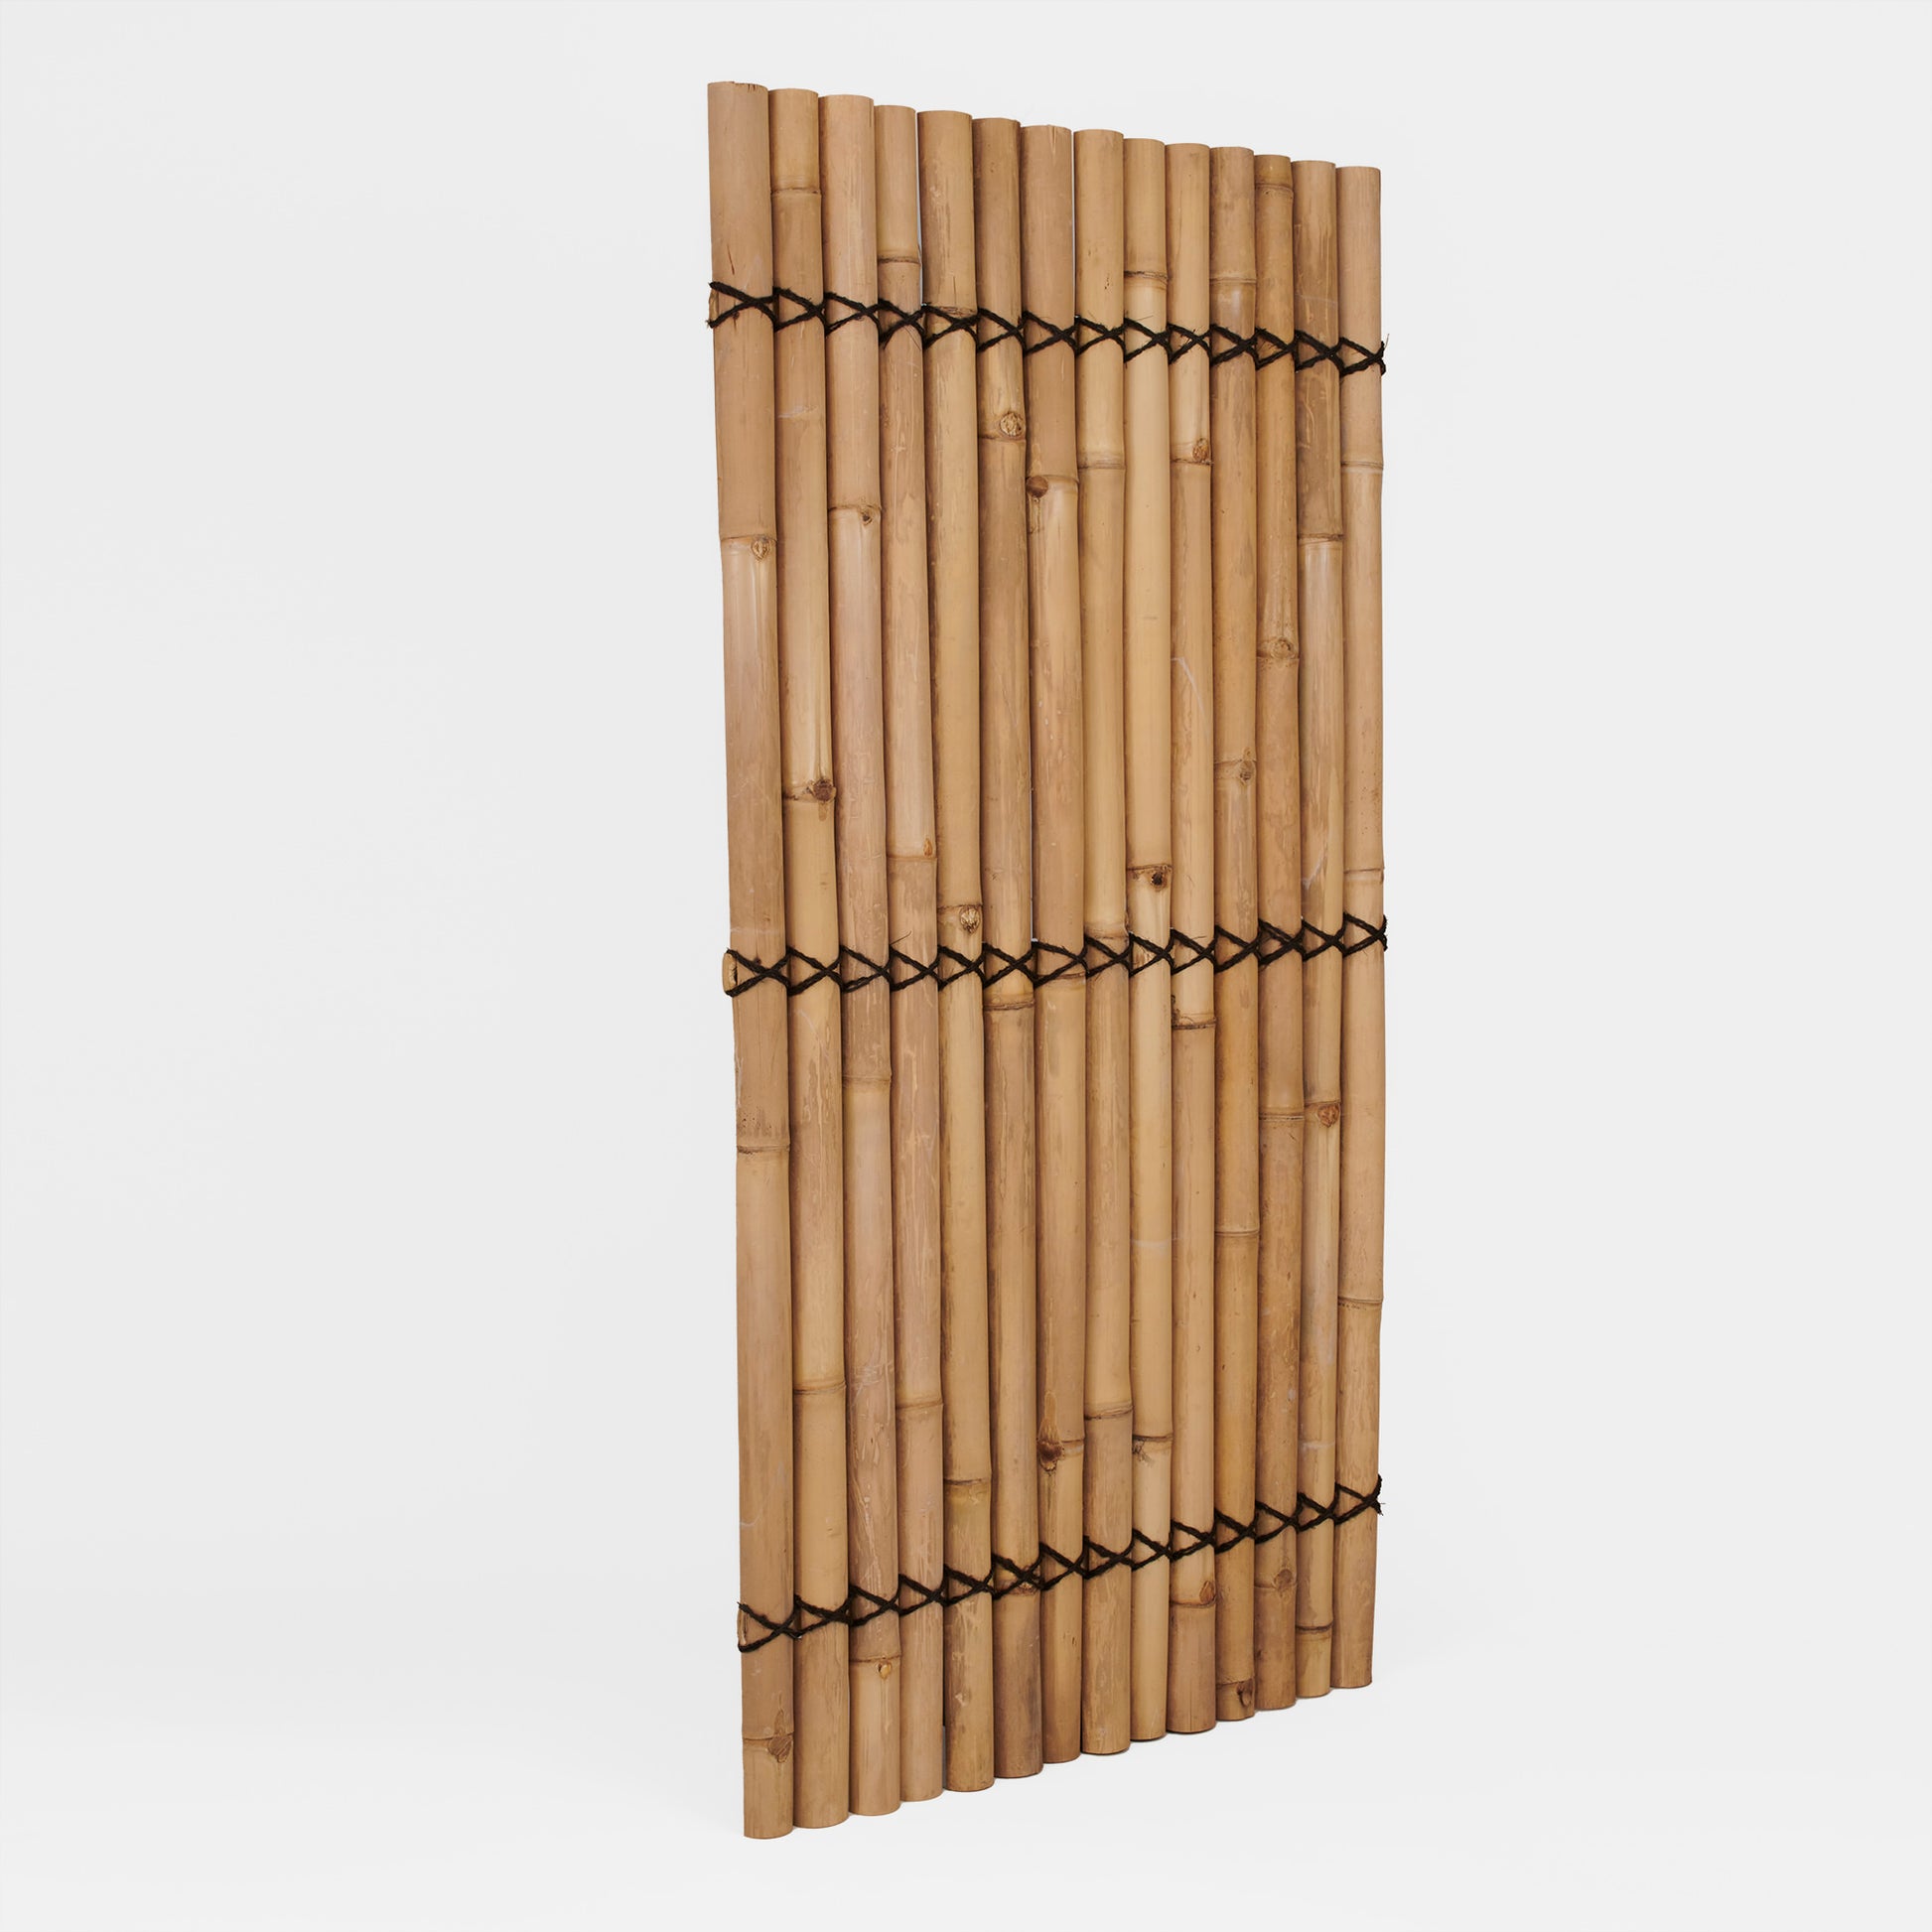 Sichtschutz oder Wandverkleidung aus halben beigen Bambusrohren mit Kokosschnürung als Dekoration - Produktfoto von vorne